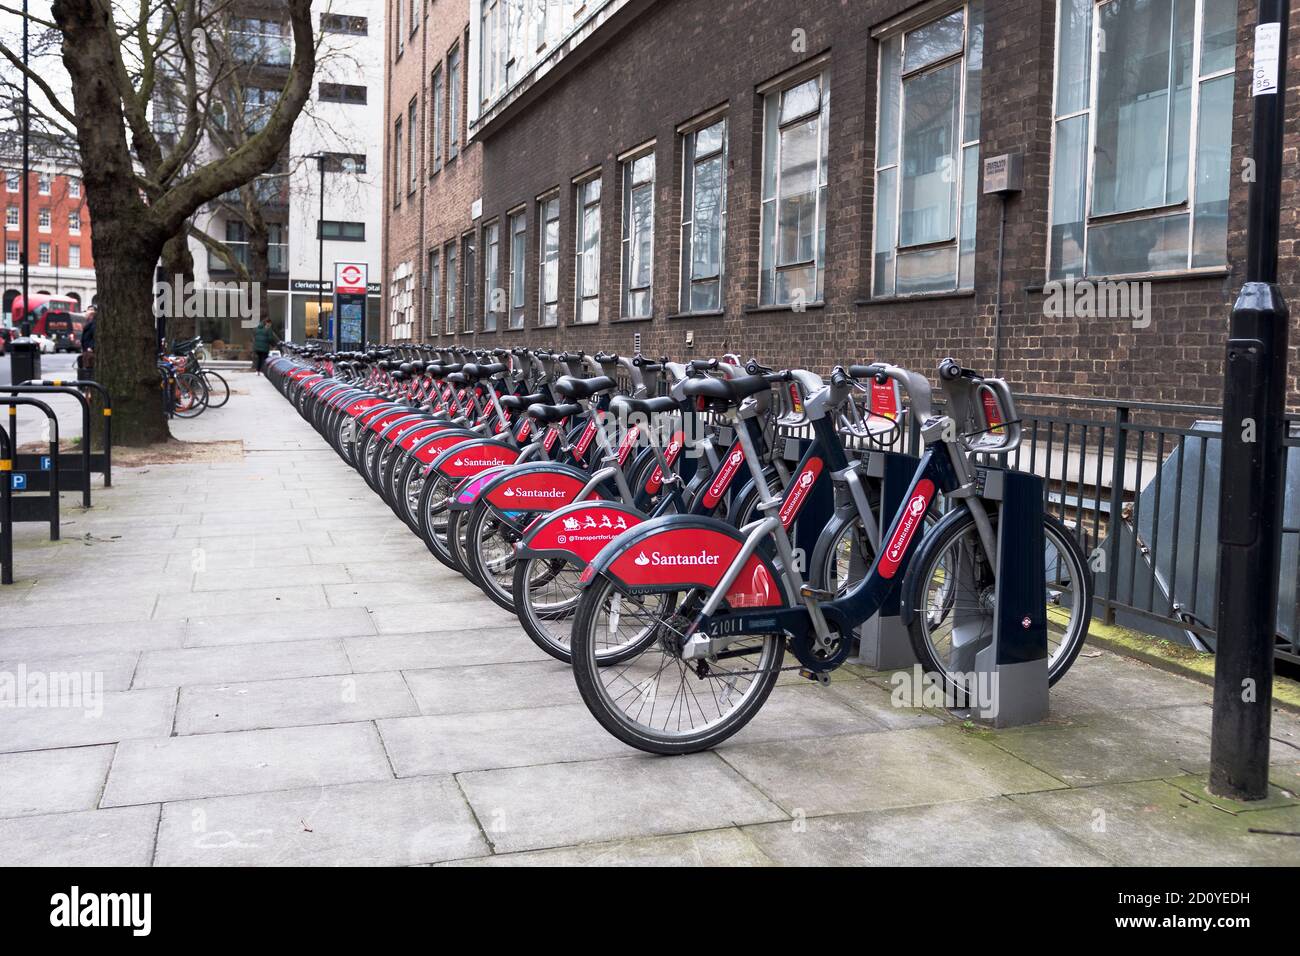 dh Bicycle stand CITTÀ LONDRA INGHILTERRA Regno Unito Street pushbikes parcheggiati noleggio bici inghilterra bikehire biciclette parcheggio rank rack Foto Stock